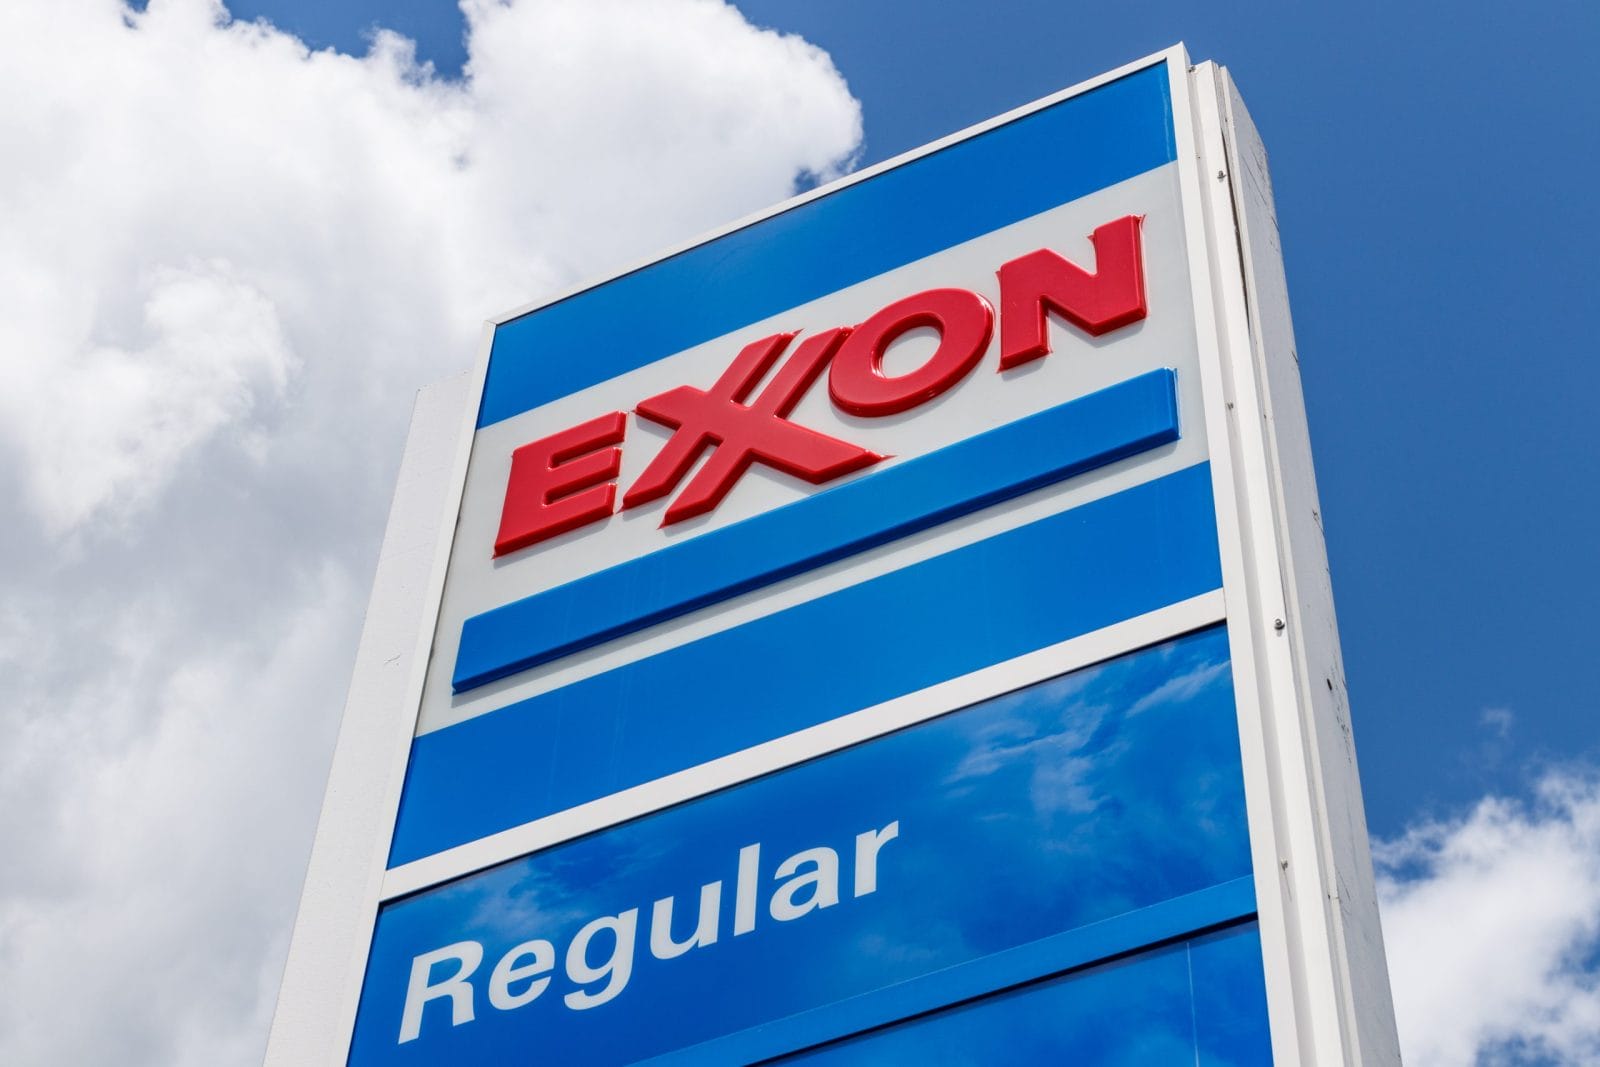 Exxon mobile gas sign